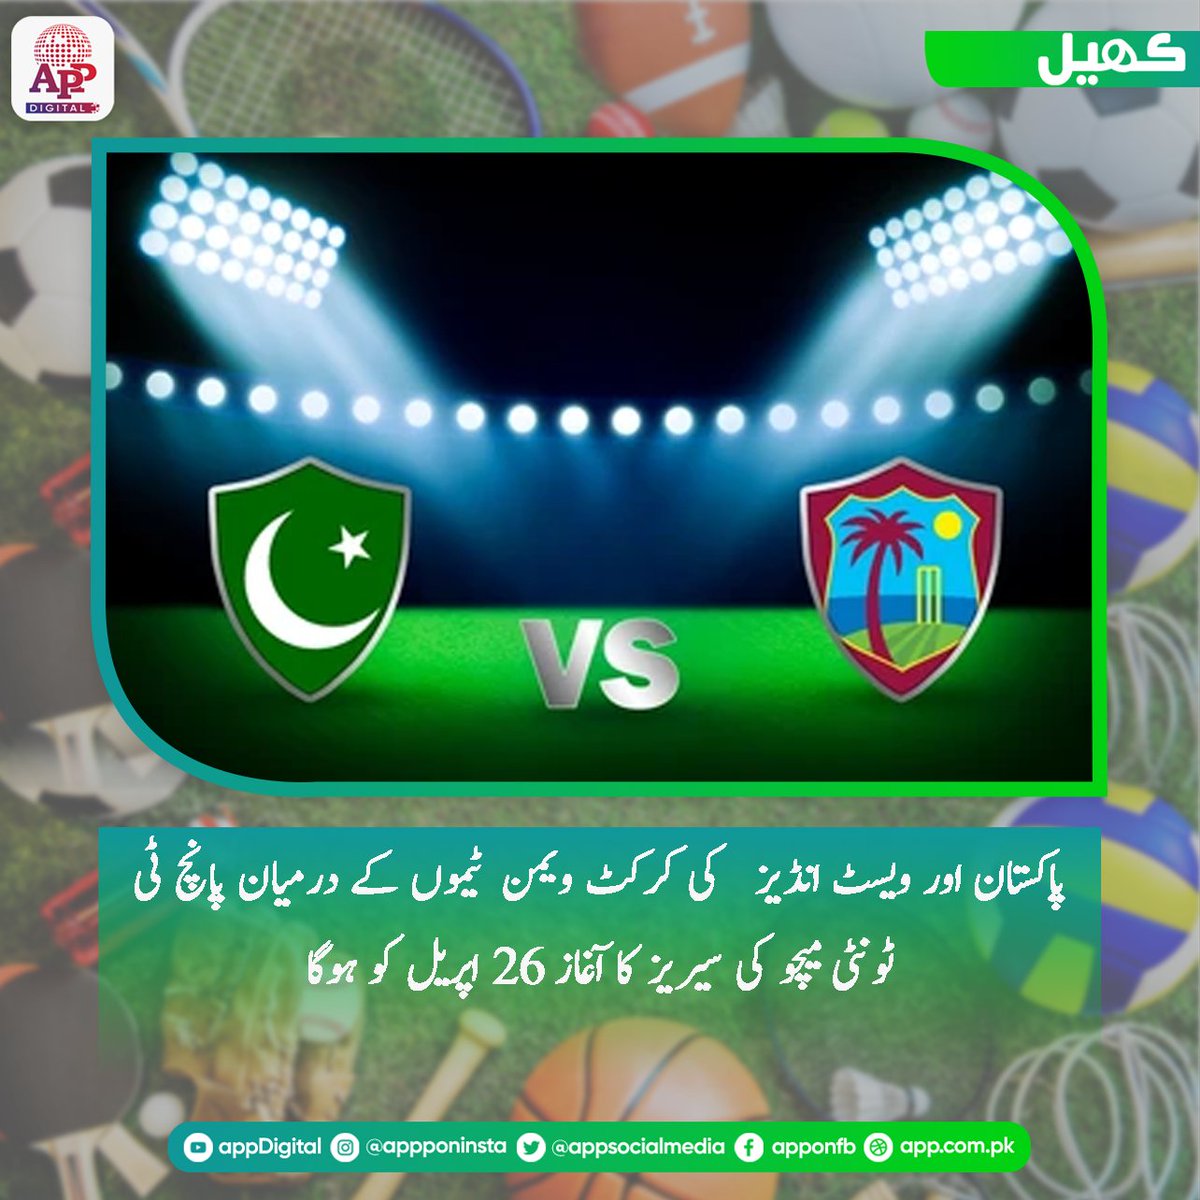 پاکستان اور ویسٹ انڈیز کی ویمن کرکٹ ٹیموں کے درمیان پانچ ٹی ٹونٹی بین الاقوامی میچوں پر مشتمل سیریز کا پہلا میچ 26 اپریل (بروز جمعہ )نیشنل سٹیڈیم کراچی میں کھیلا جائے گا #Cricket #Pakistan #WestIndies #PAKWvWIW